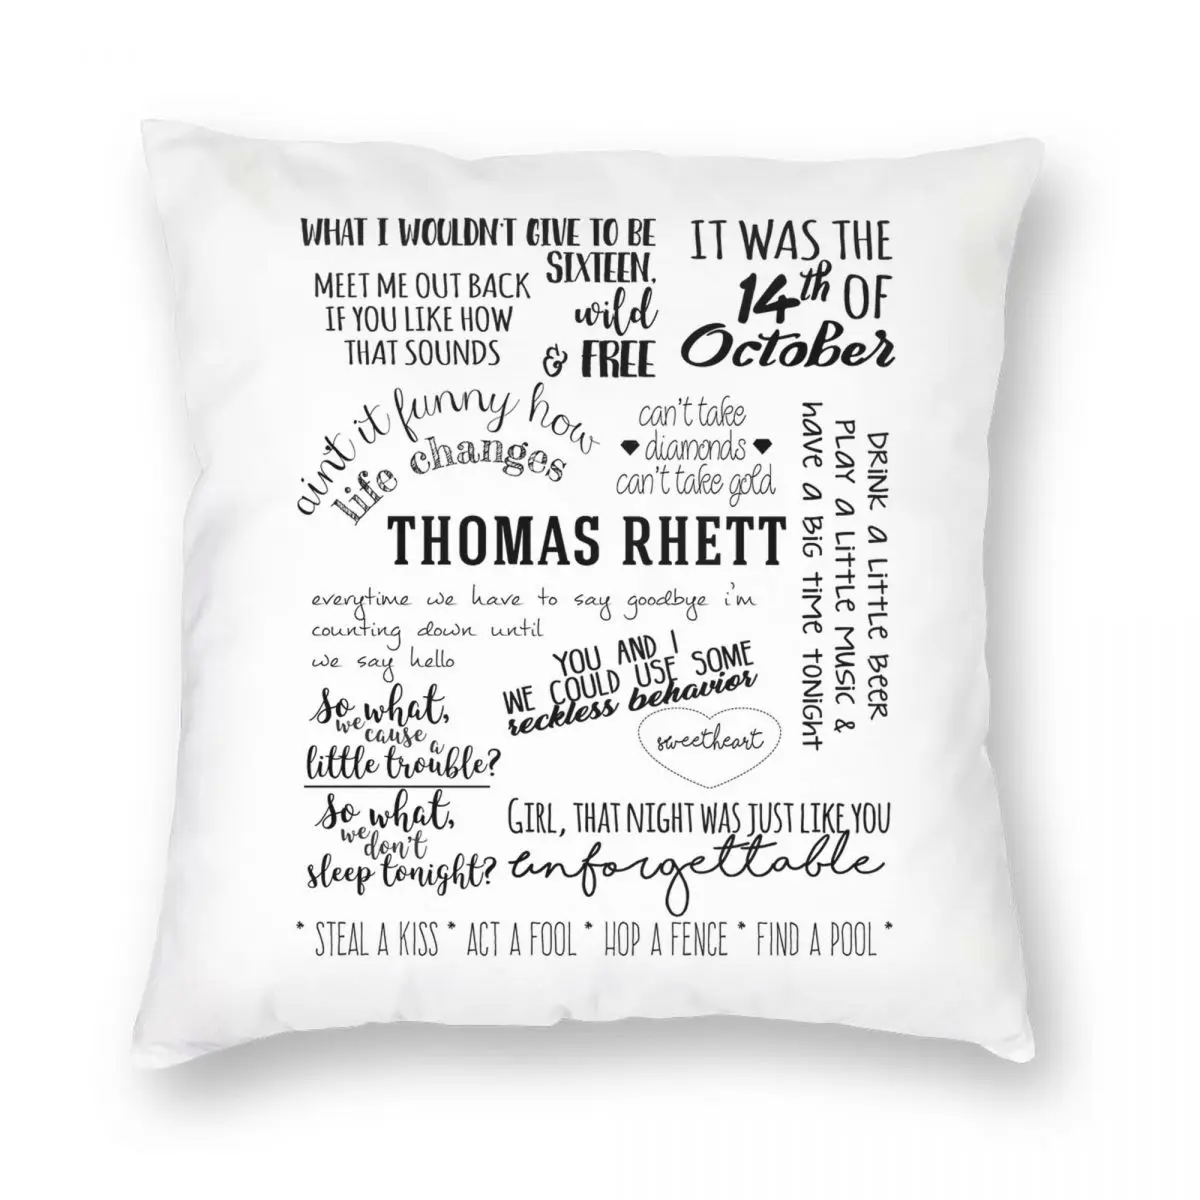 

Квадратный Чехол-Подушка Thomas Rhett с альбомом смены жизни, чехол из полиэстера и льна, бархатный декоративный чехол с застежкой-молнией, чехол для диванной подушки